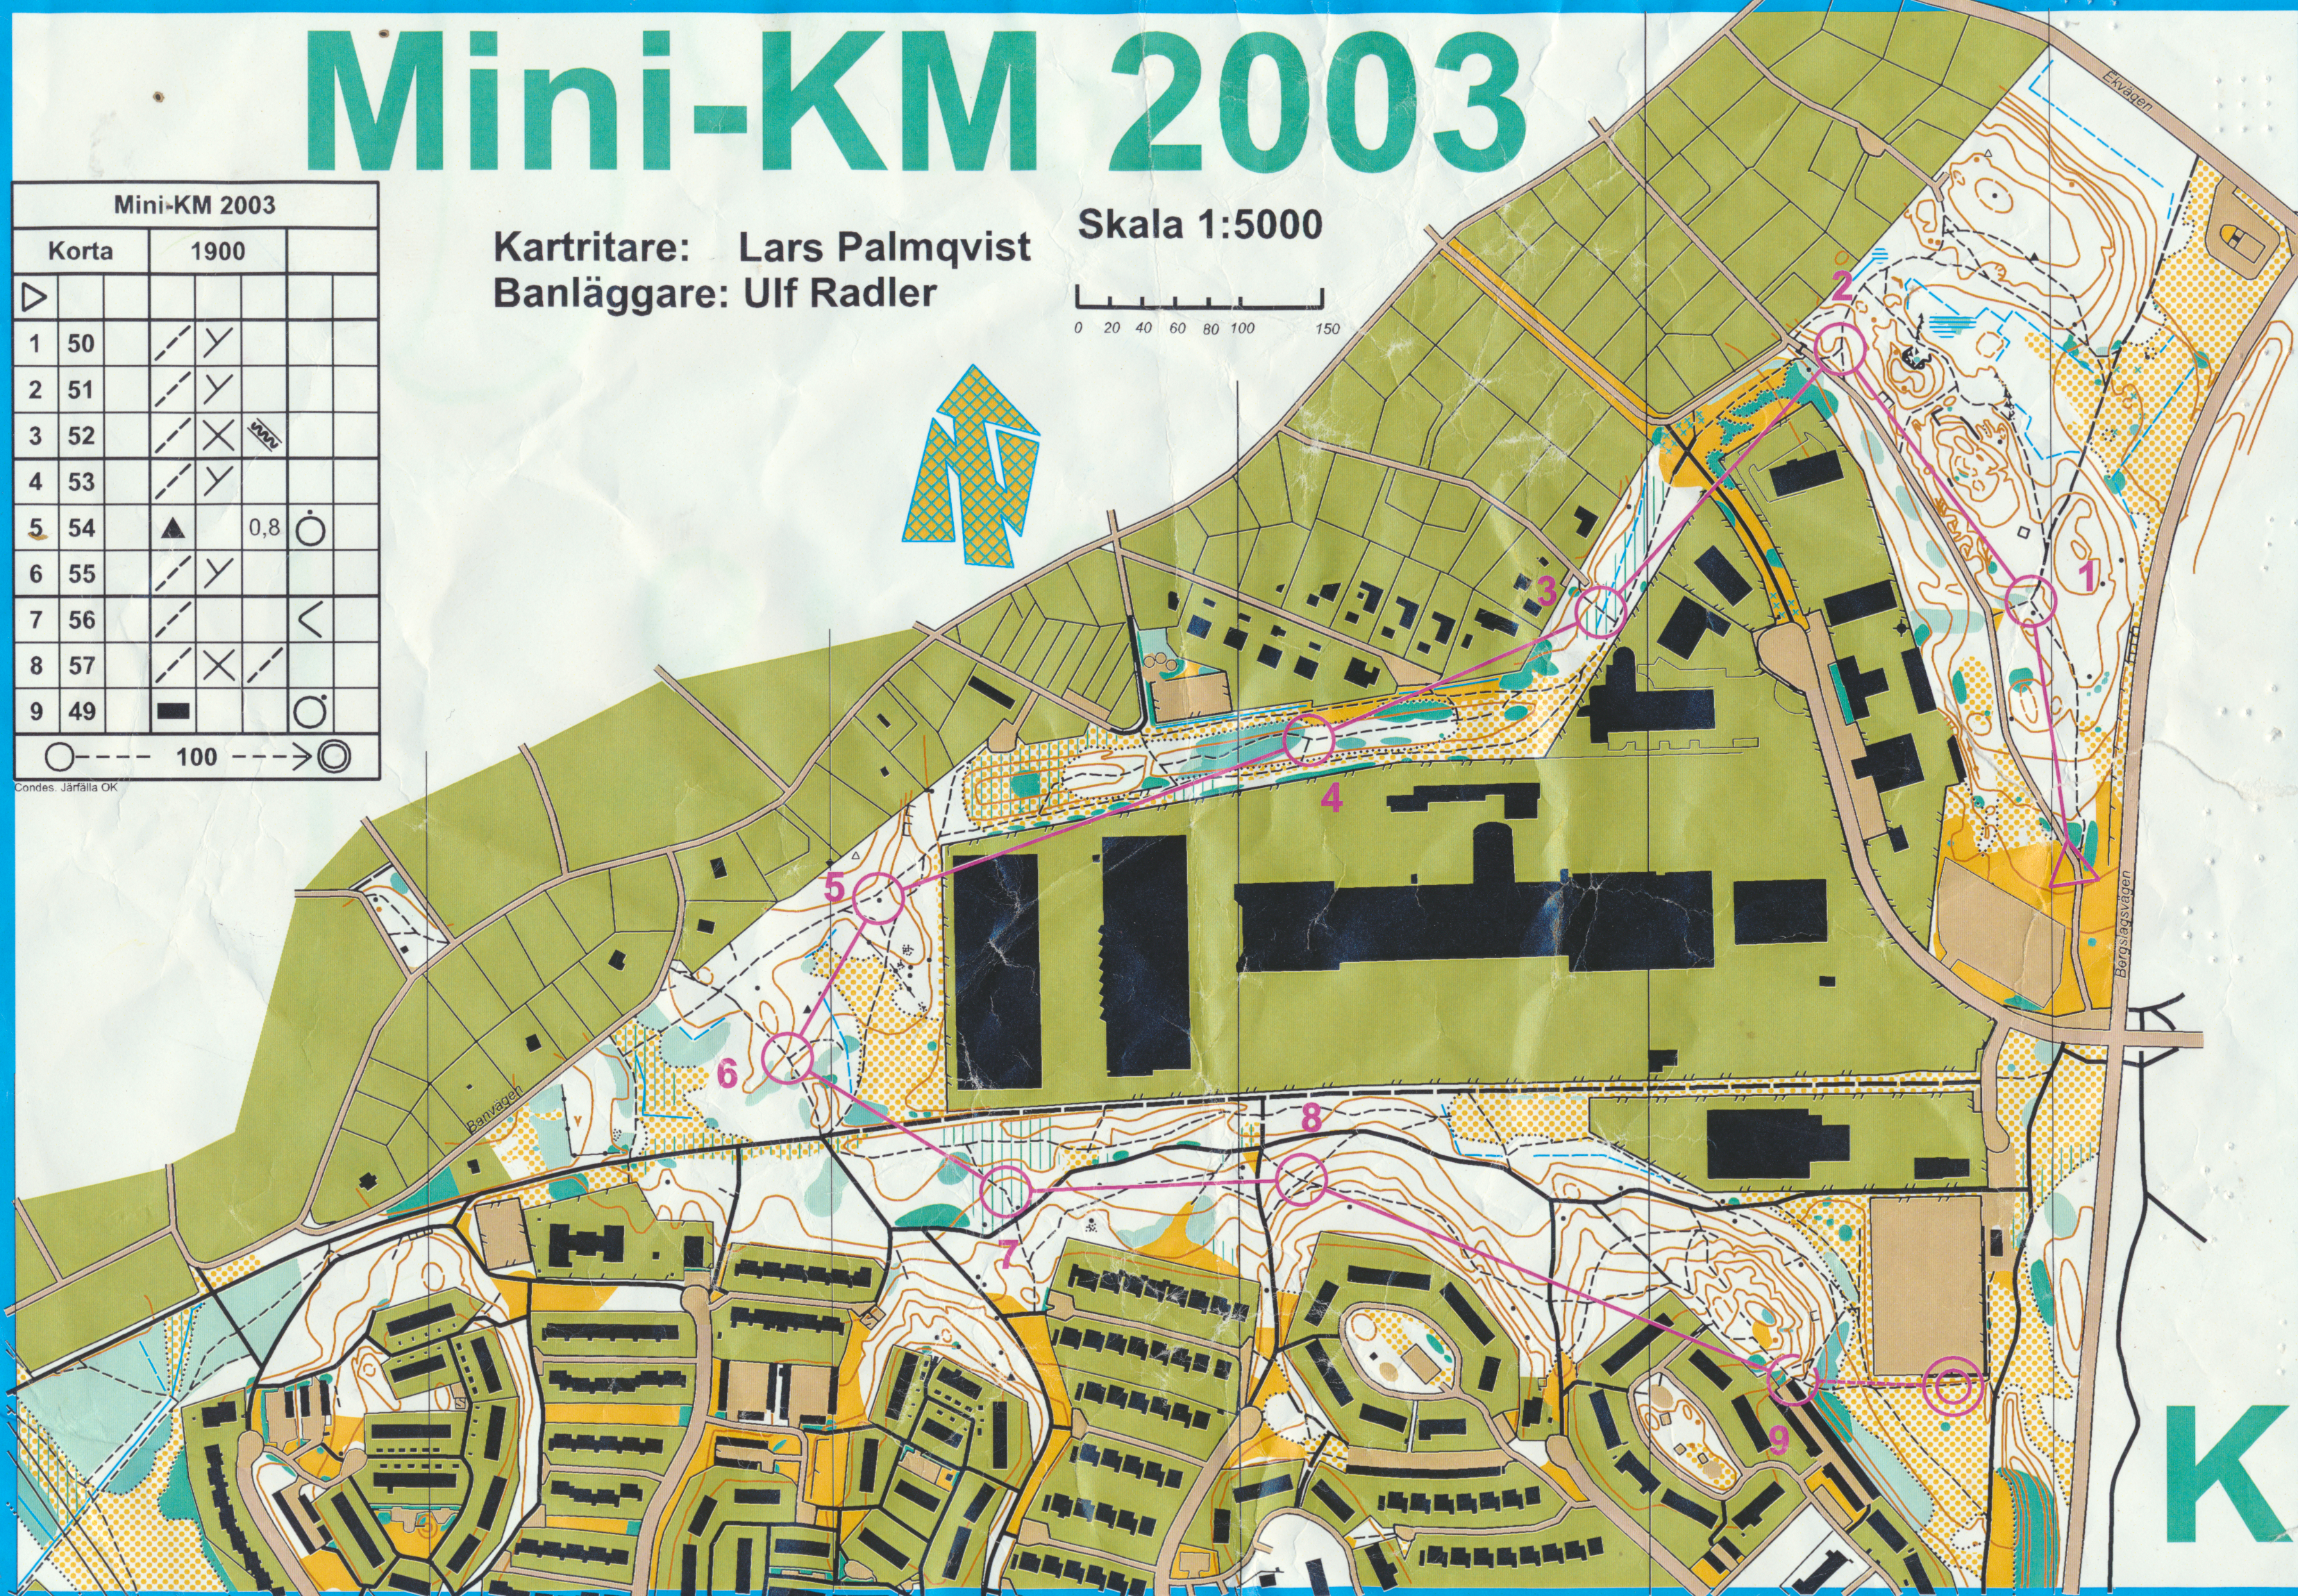 Mini-KM (28.08.2003)